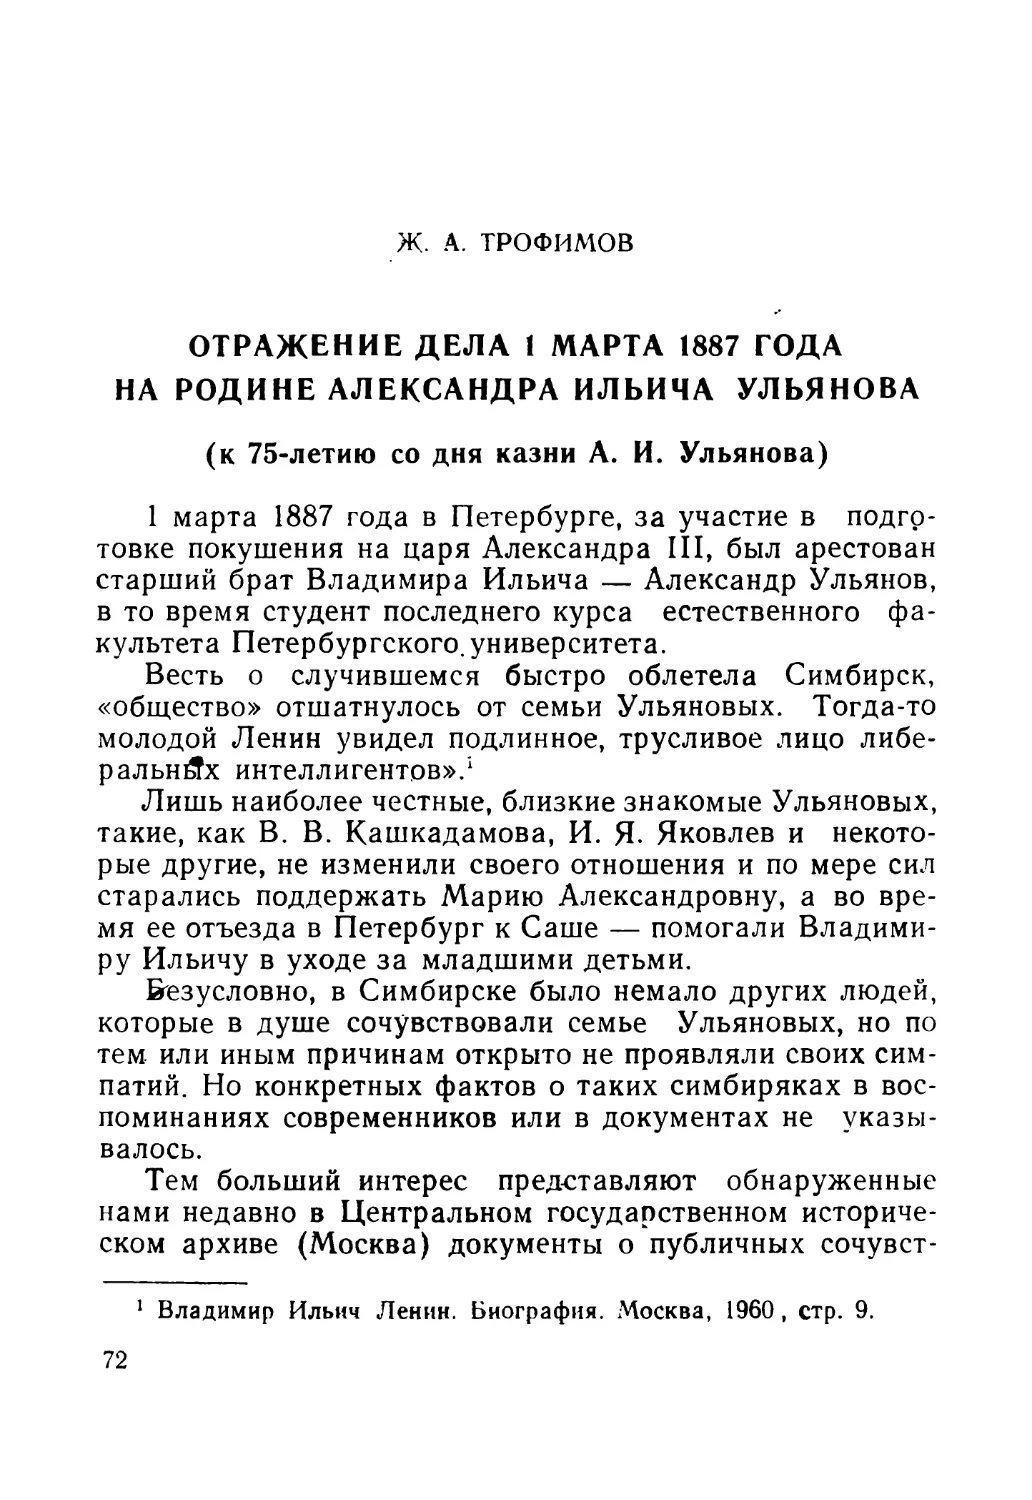 Трофимов Ж. А. Отражение дела 1 марта 1887 года на родине Александра Ильича Ульянова